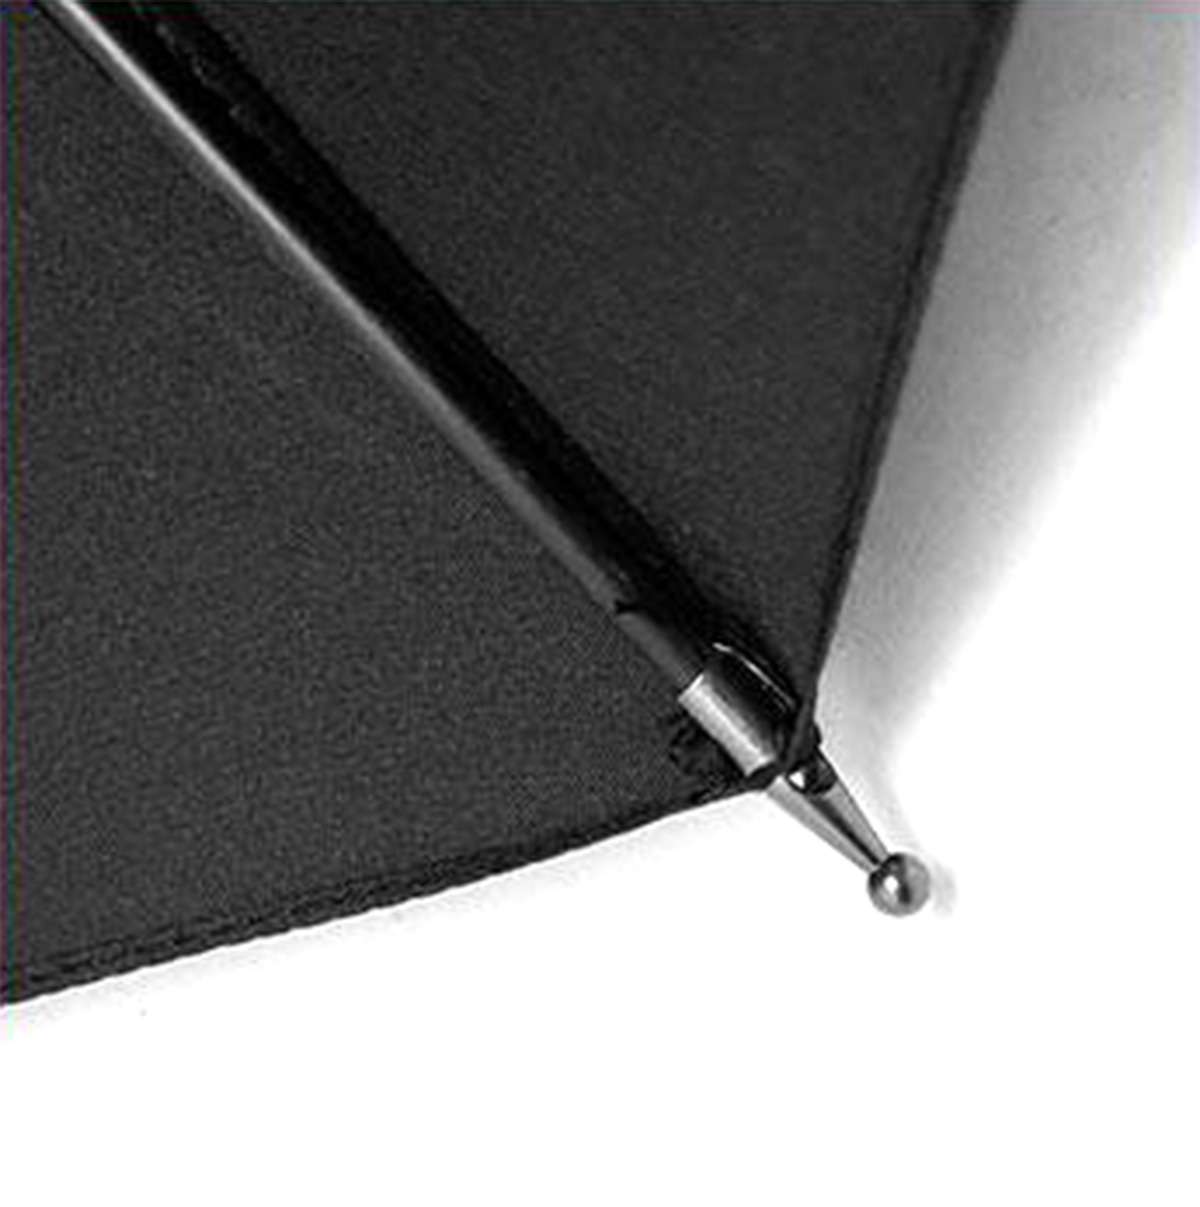 UZI Tactical Umbrella with Carbide Glass Breaker